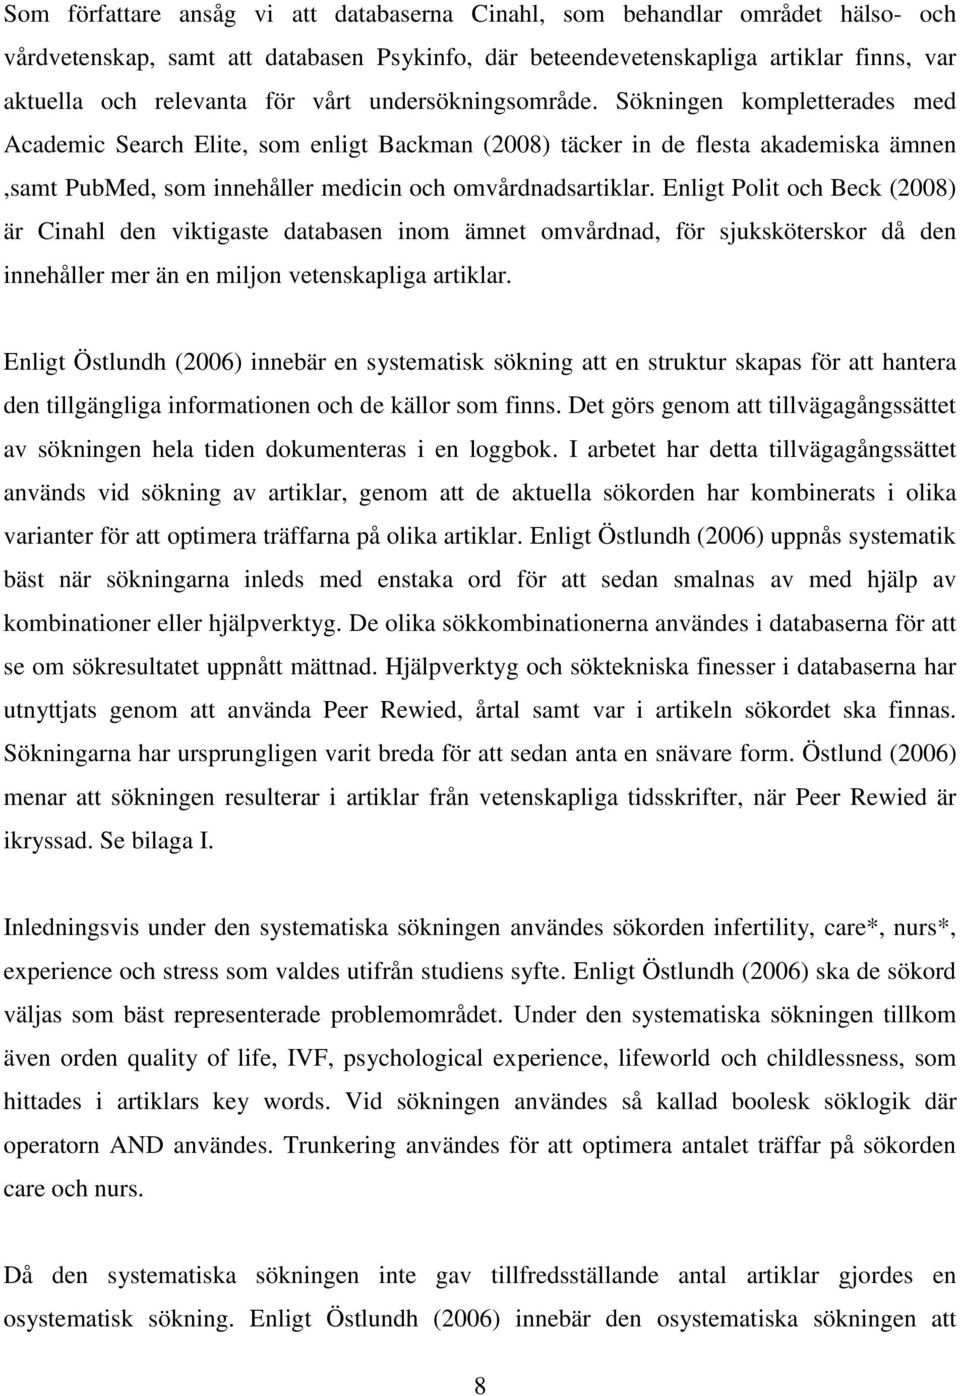 Enligt Polit och Beck (2008) är Cinahl den viktigaste databasen inom ämnet omvårdnad, för sjuksköterskor då den innehåller mer än en miljon vetenskapliga artiklar.